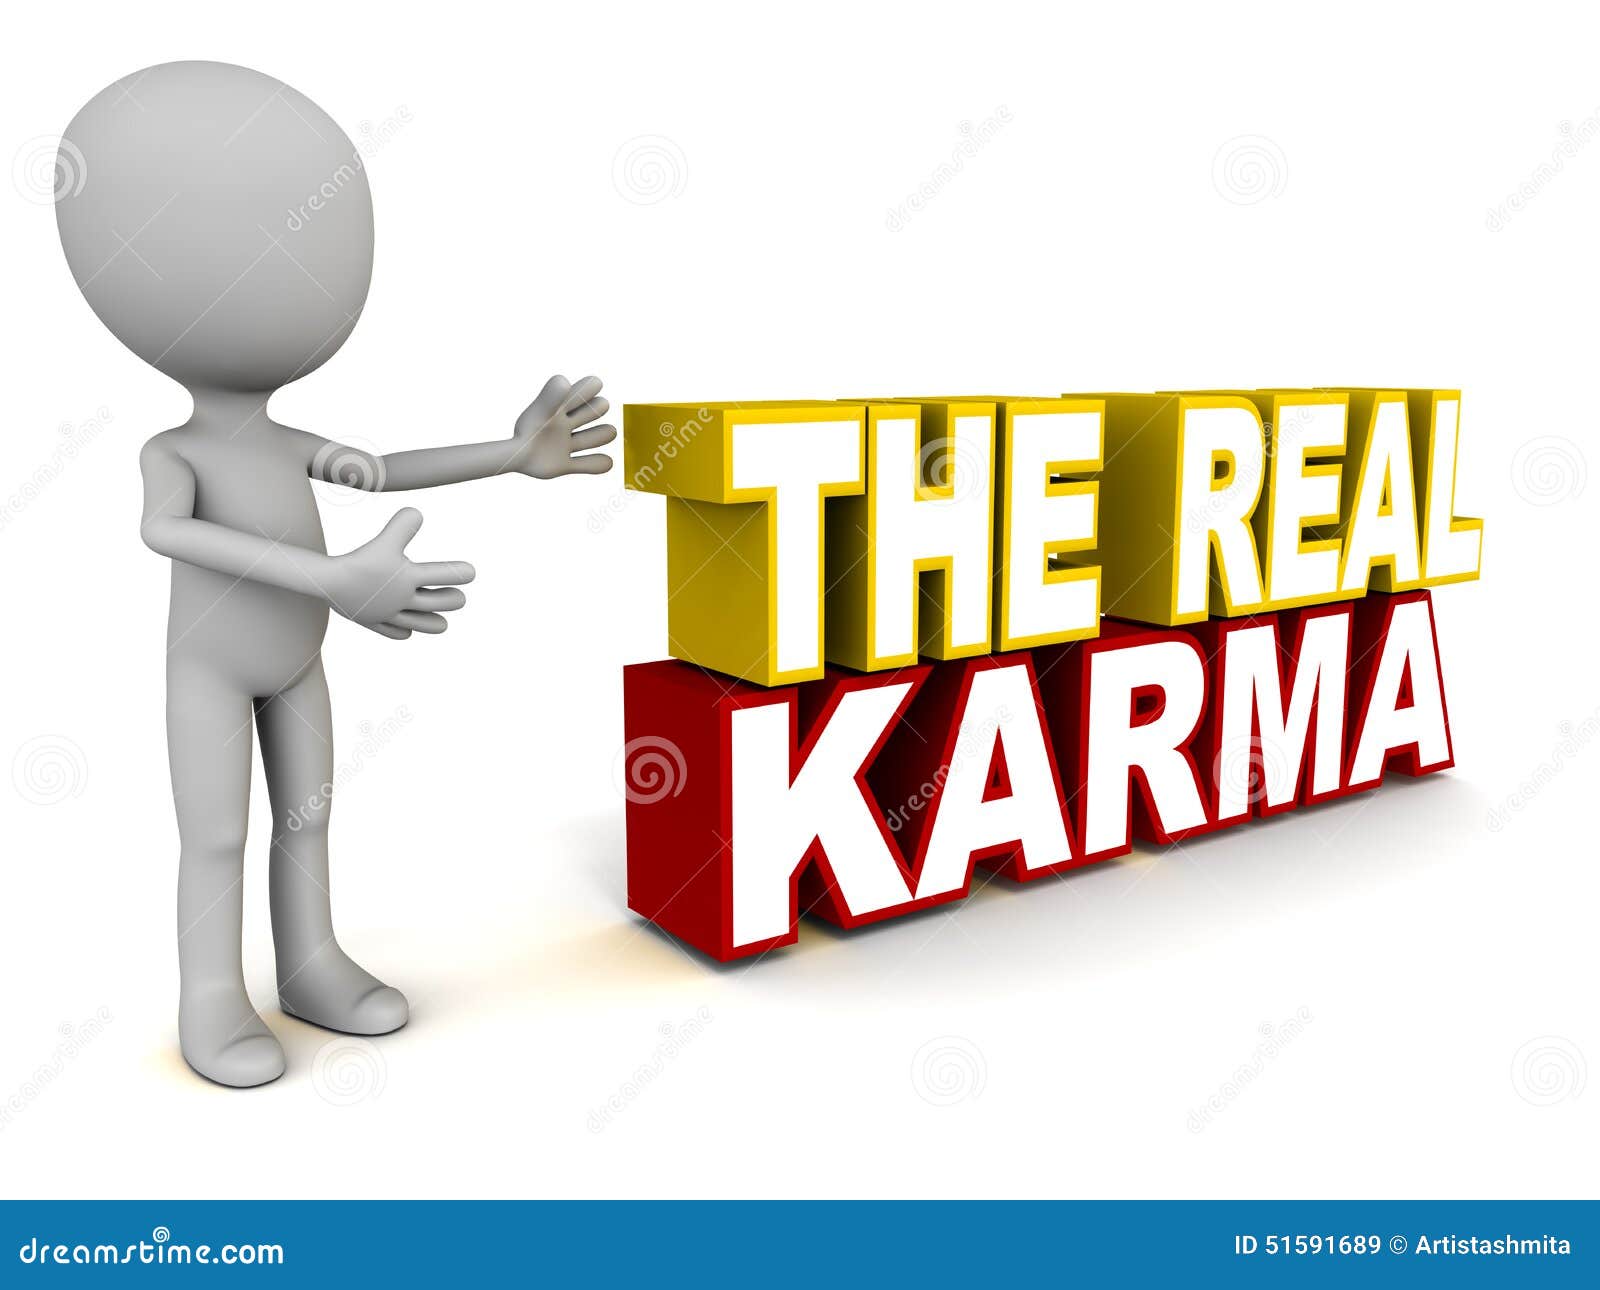 Οι πραγματικές λέξεις karma, που παρουσιάζουν ουσιαστικές πράξεις που οδηγούν έναν βασικό πνευματικό ή υλικό σκοπό